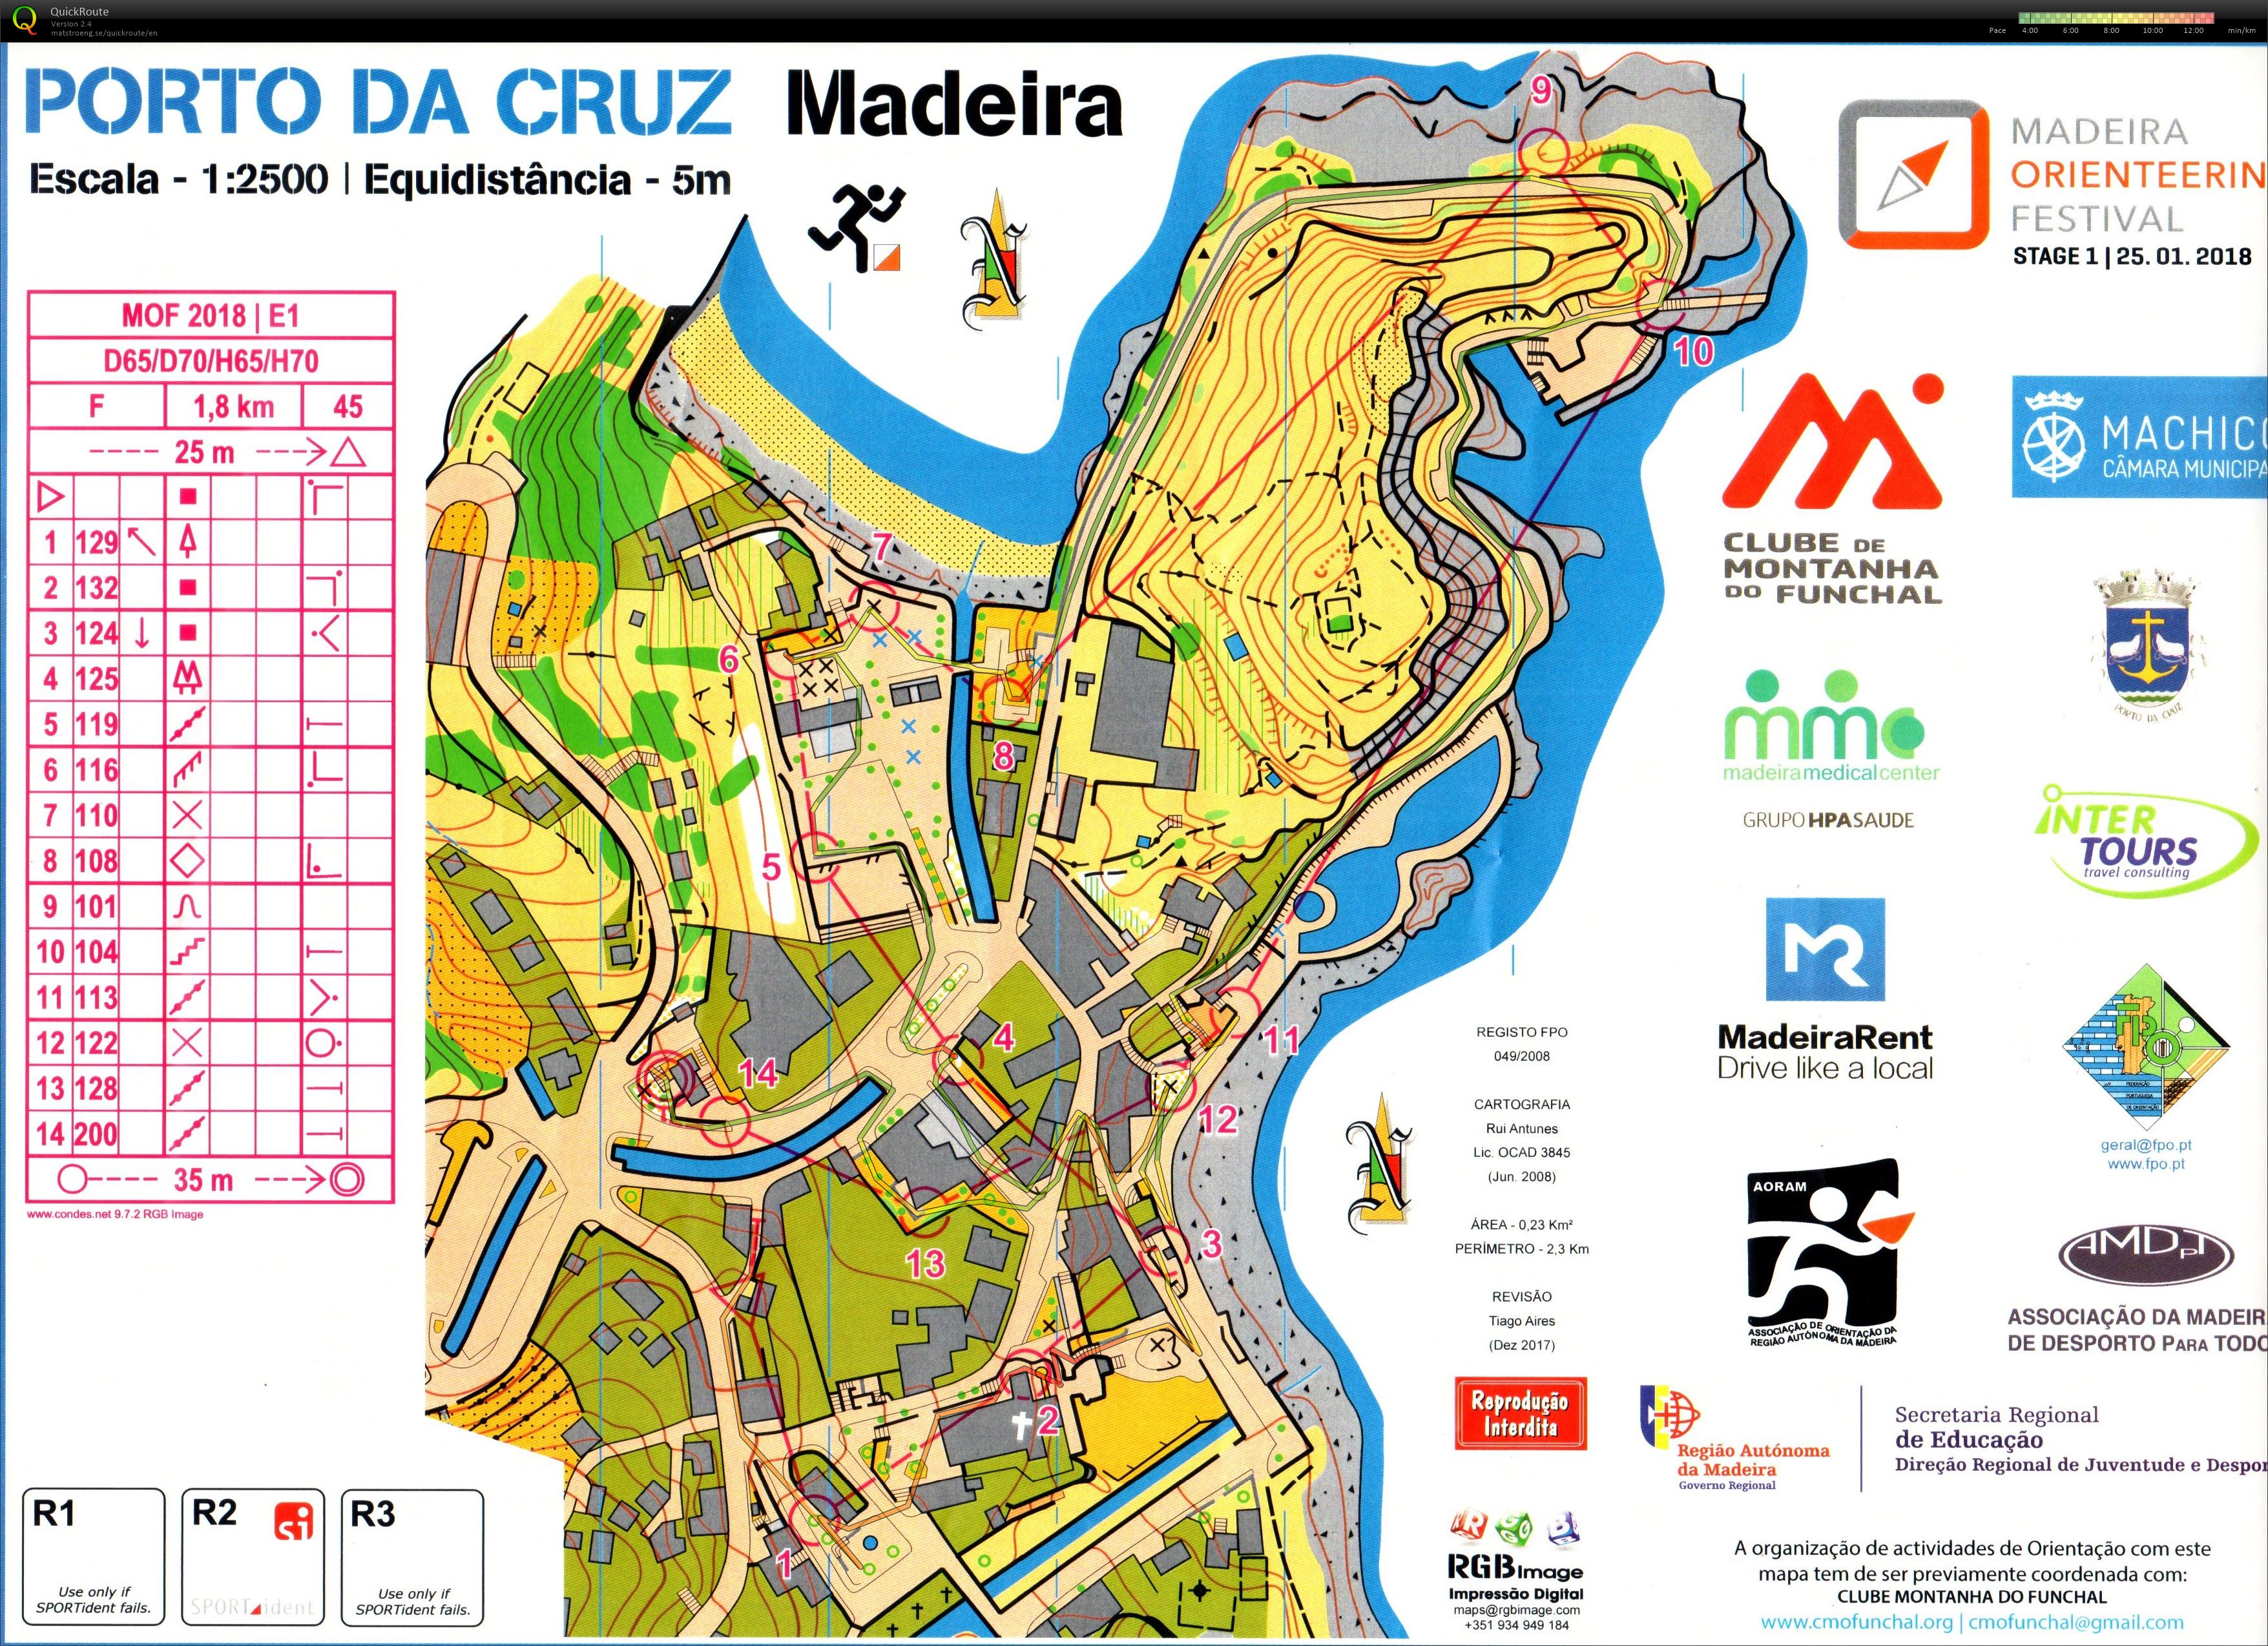 Madeira O-Festival E1 (25-01-2018)